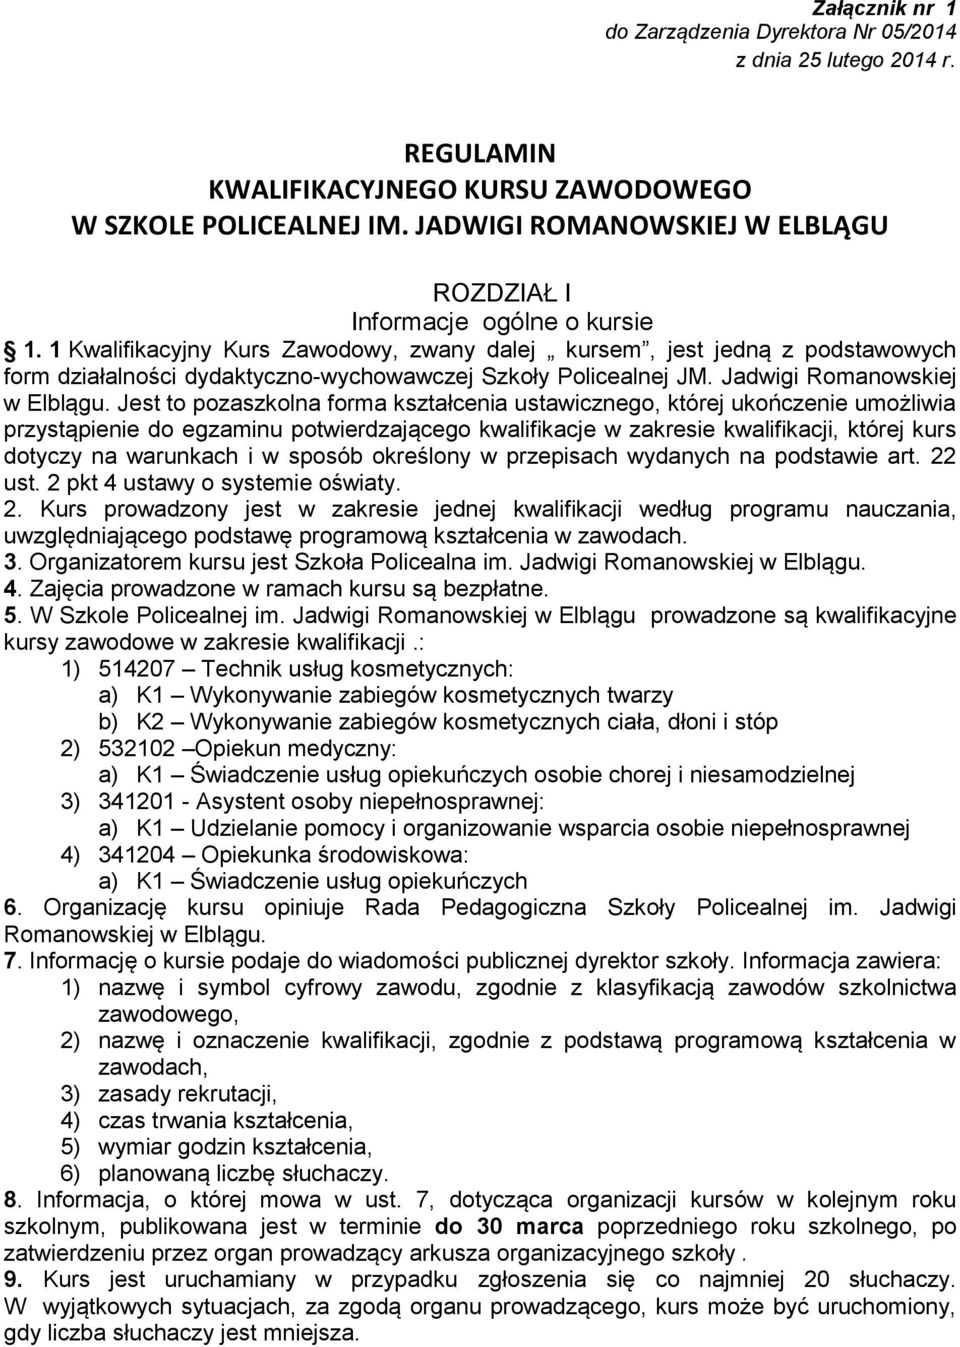 1 Kwalifikacyjny Kurs Zawodowy, zwany dalej kursem, jest jedną z podstawowych form działalności dydaktyczno-wychowawczej Szkoły Policealnej JM. Jadwigi Romanowskiej w Elblągu.